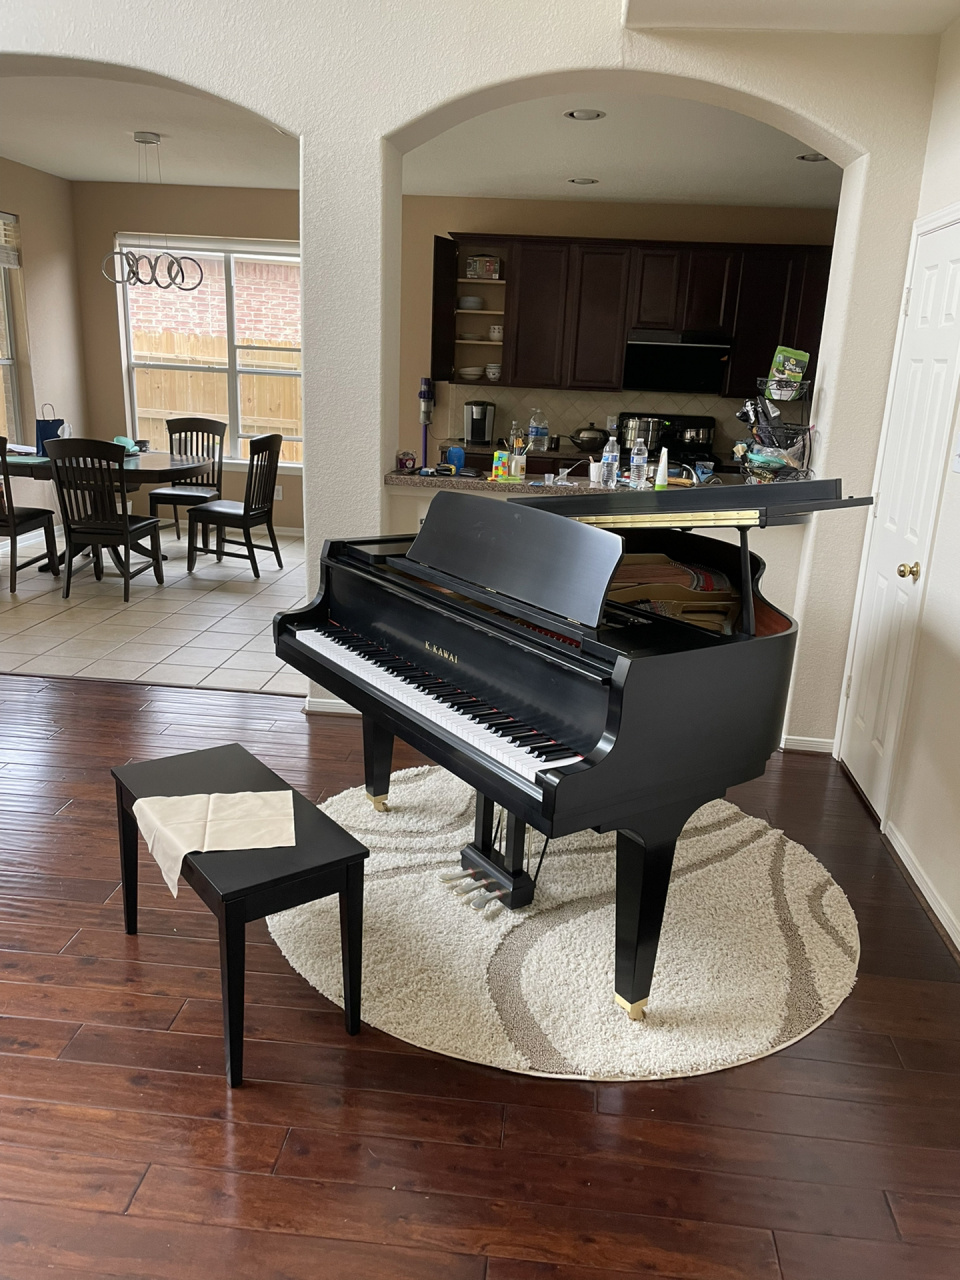 钢琴放客厅是一个正确的决定 我有两个地方可以放钢琴,一个是客厅,另